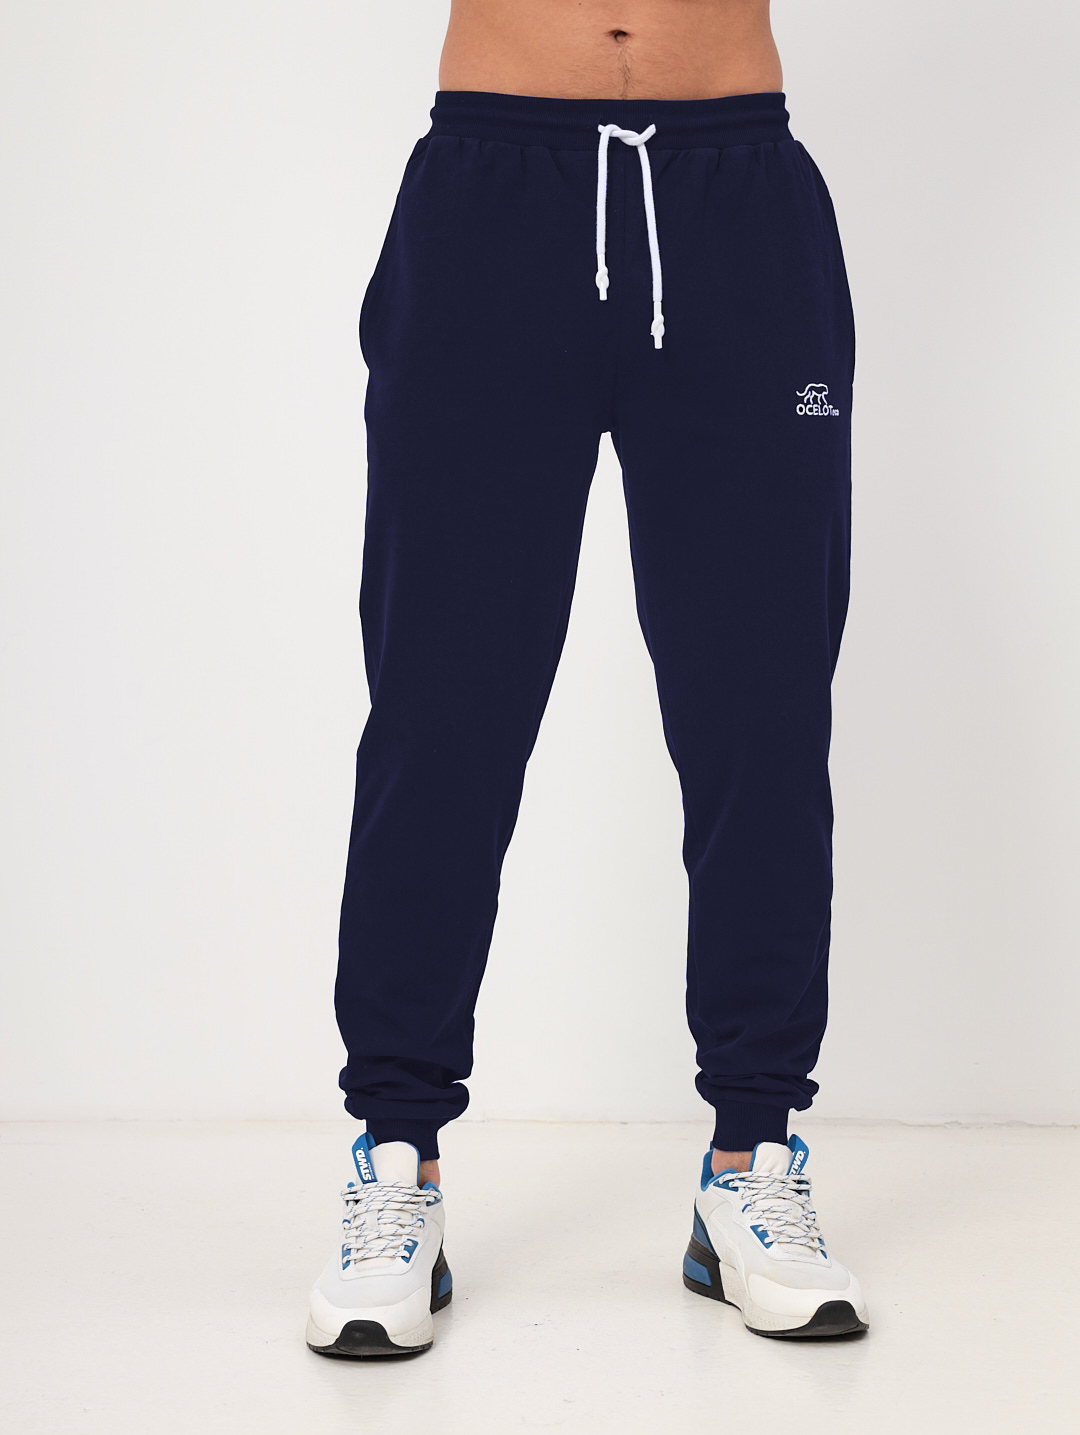 Спортивные брюки мужские OCELOT eco Бестселлер синие 46 RU